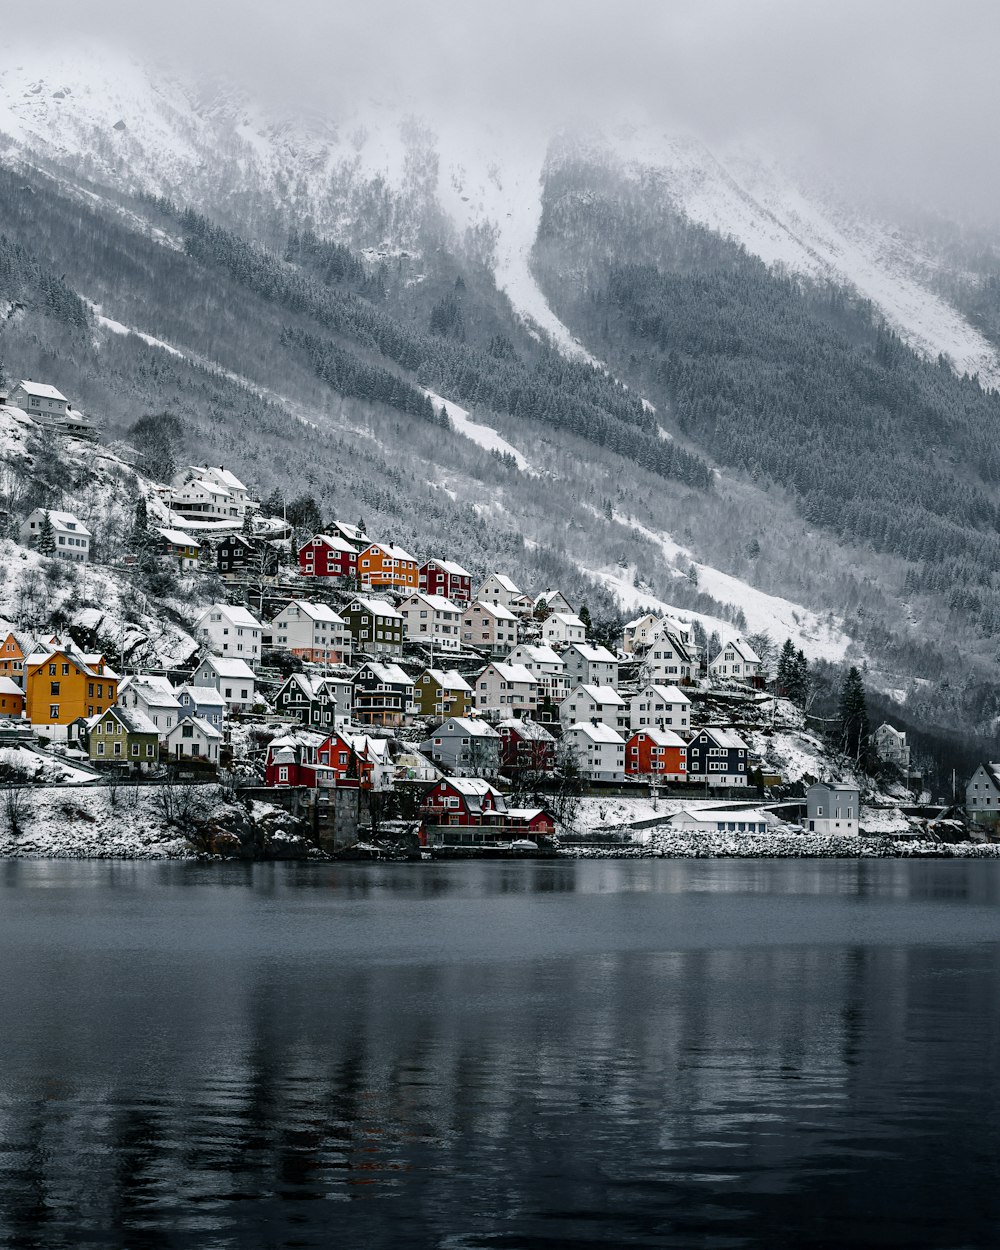 Casas cerca de cuerpos de agua y montañas cubiertas de nieve durante el día